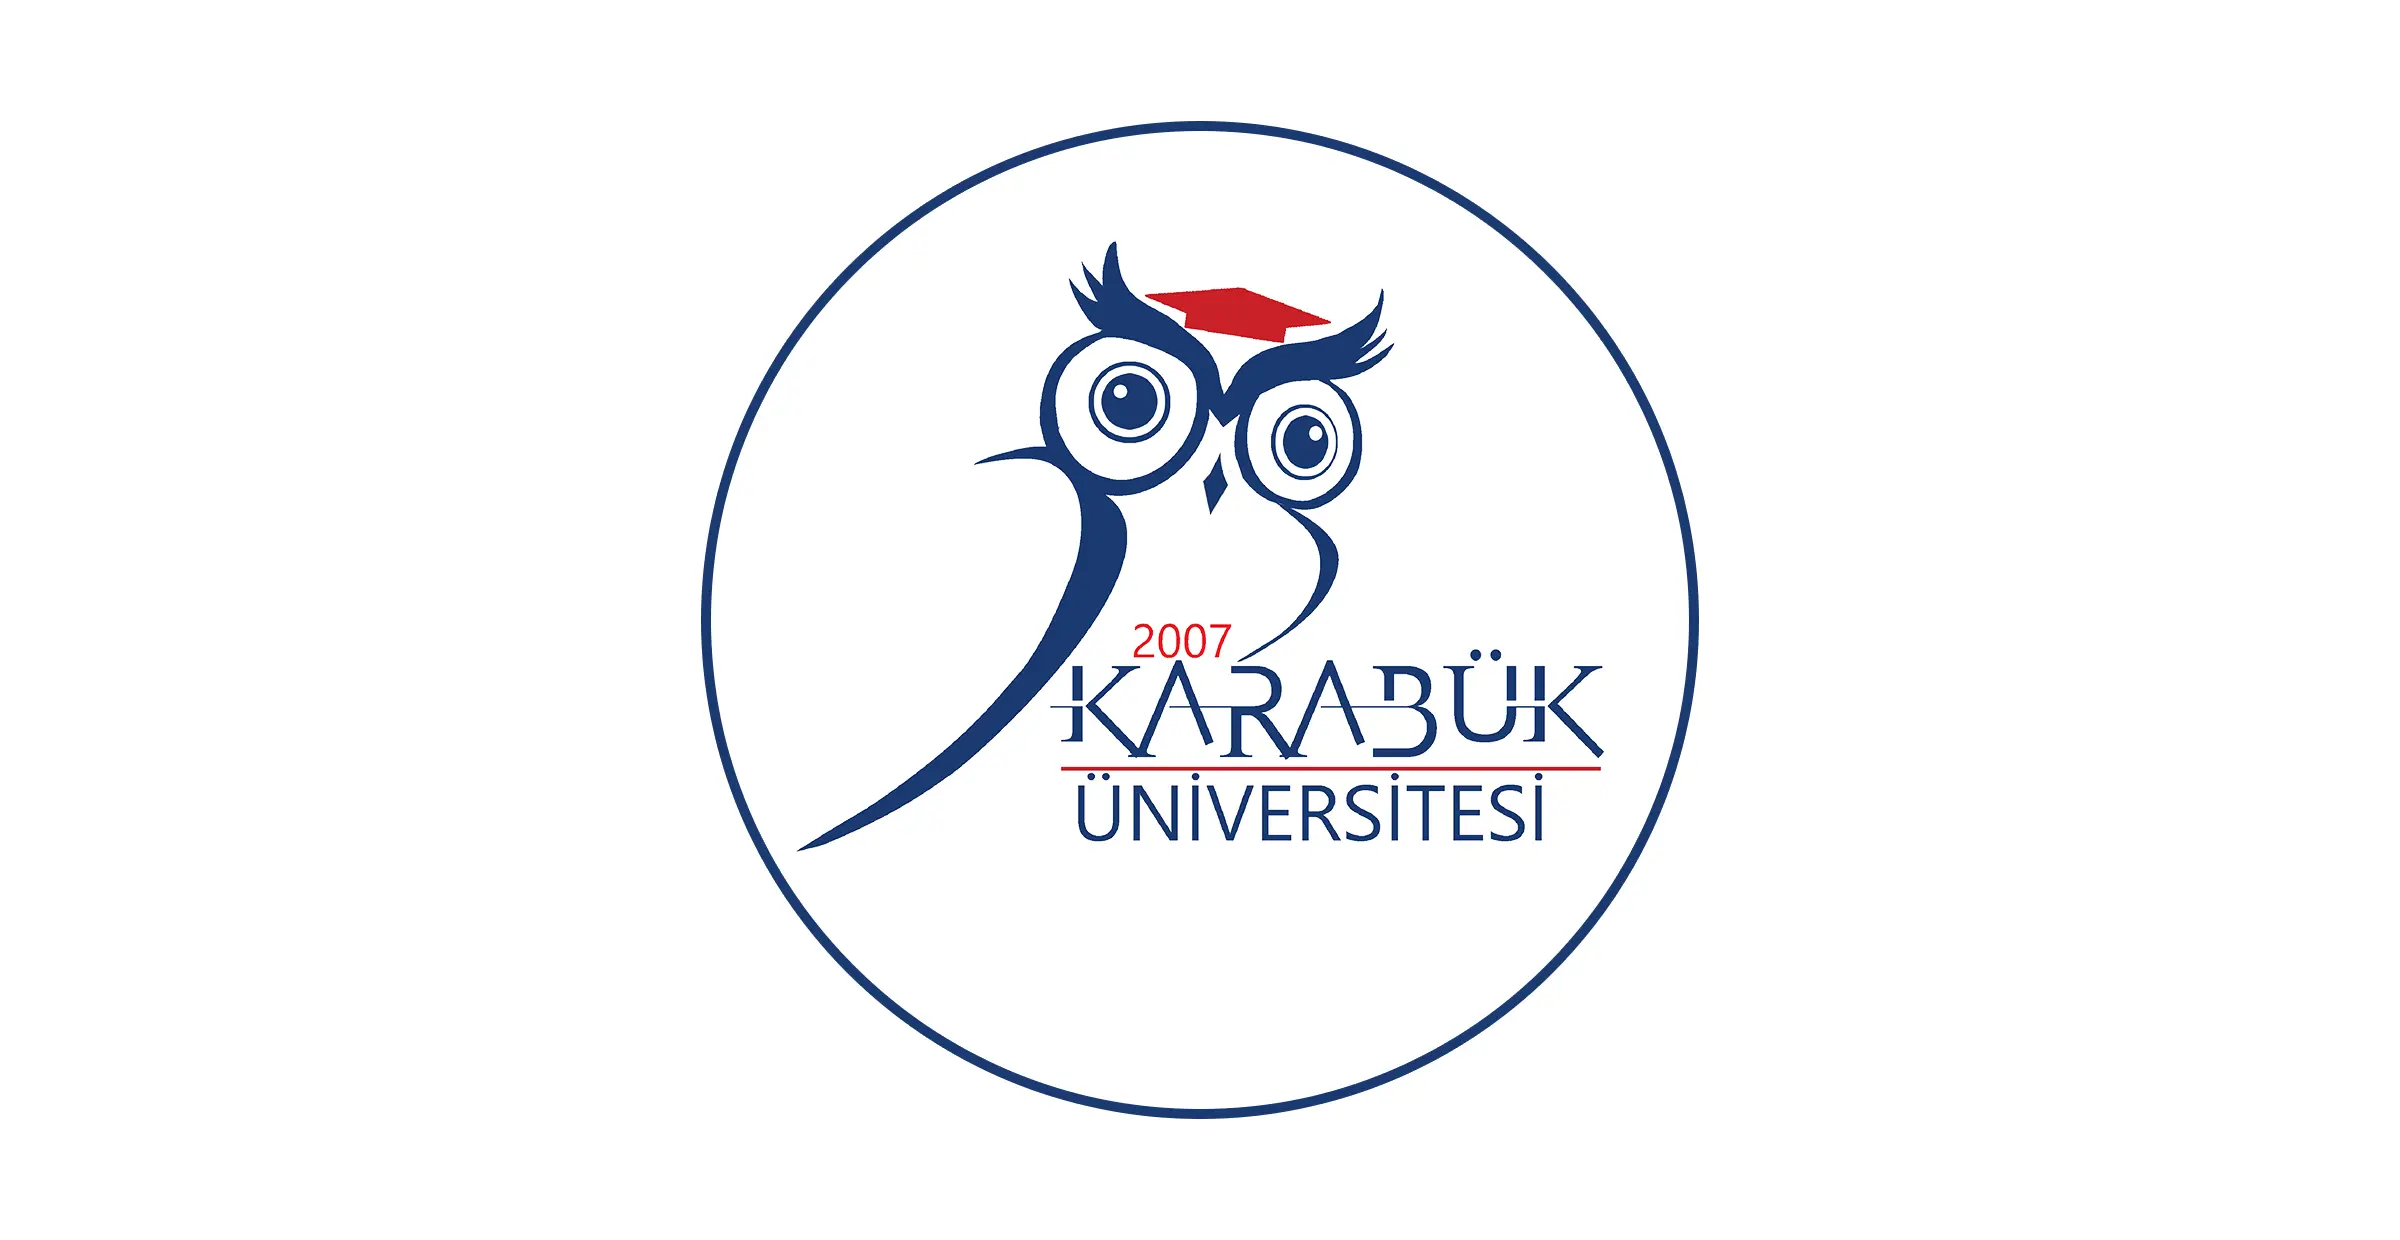 تقع جامعة كارابوك Karabük Üniversitesi التركية داخل حدود كارابوك وتحمل نفس اسم المدينة ، وهي مؤسسة للتعليم العالي تأسست عام 2007